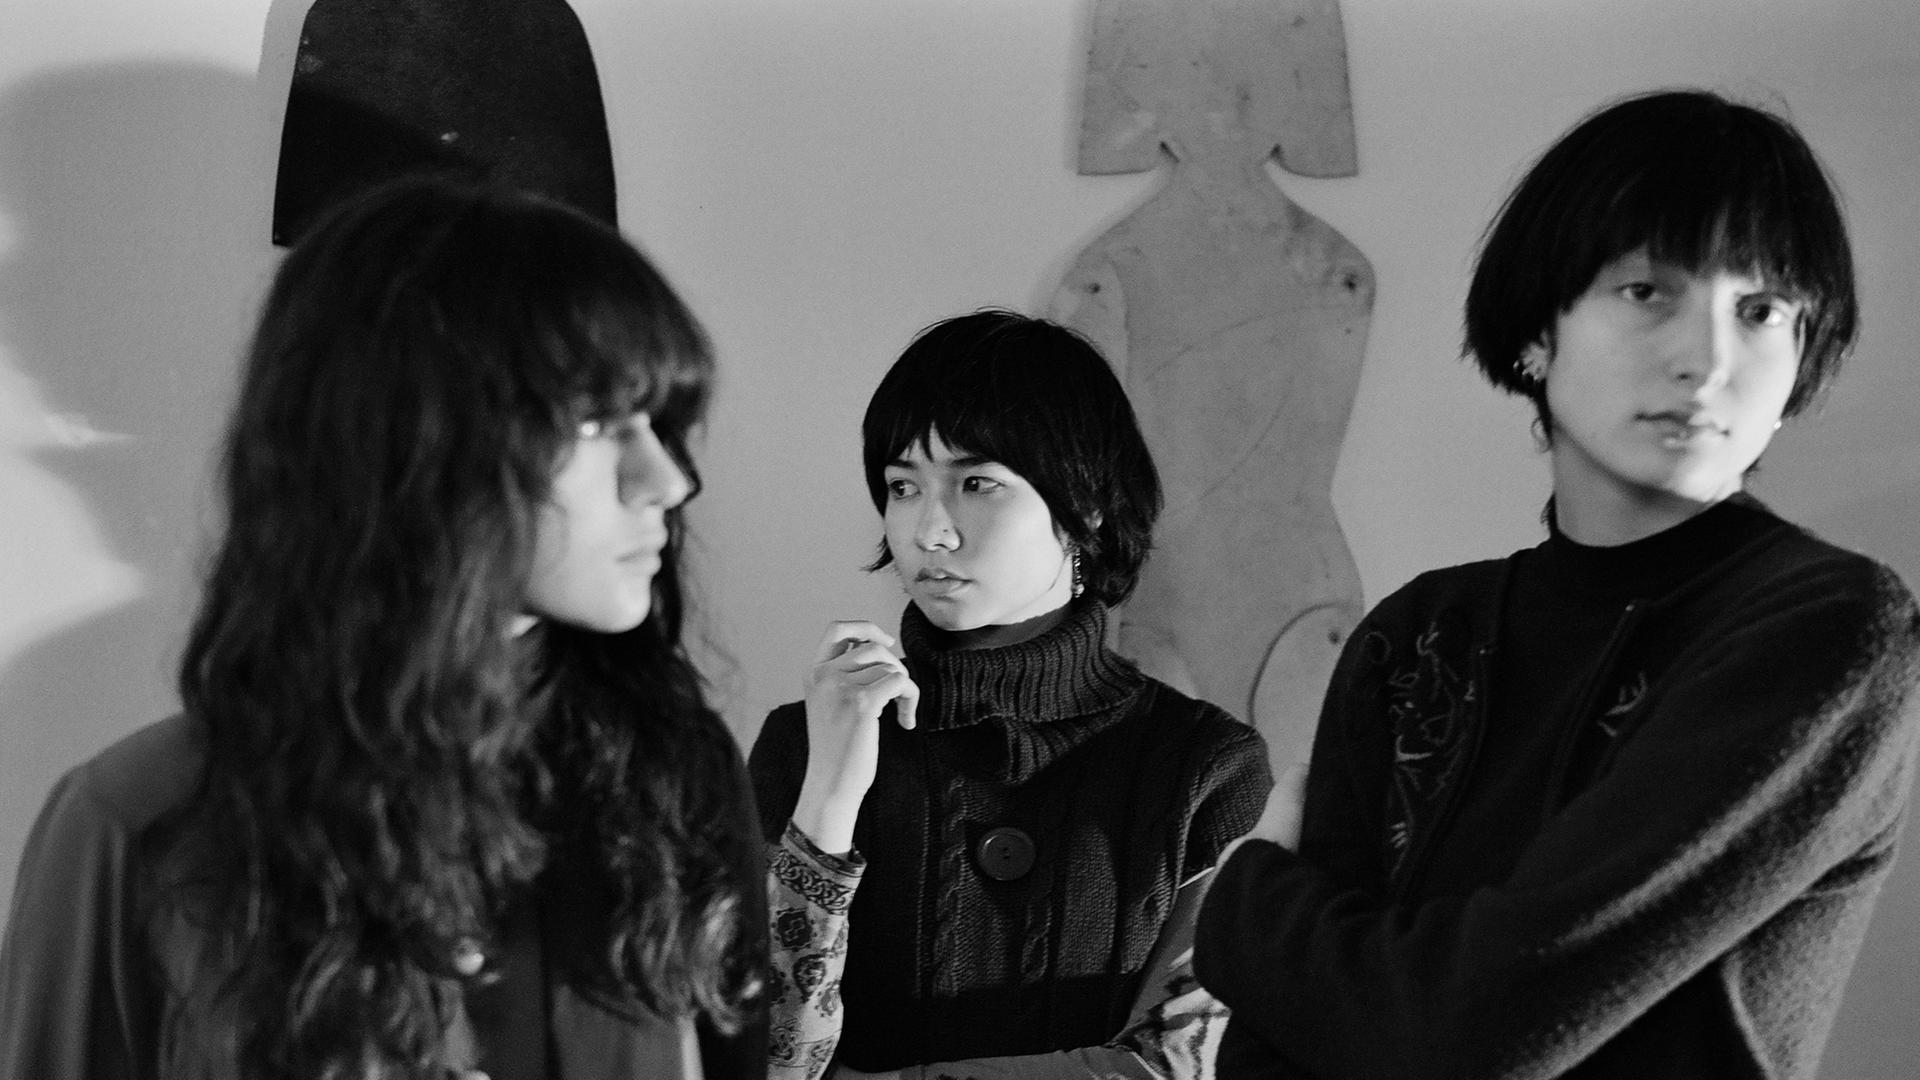 Drei junge Frauen auf einem Schwarz-Weiß-Foto. Die ganz links hat lange Haare, die Frau in der Mitte und die rechts tragen fransige Pilzkopffrisuren.